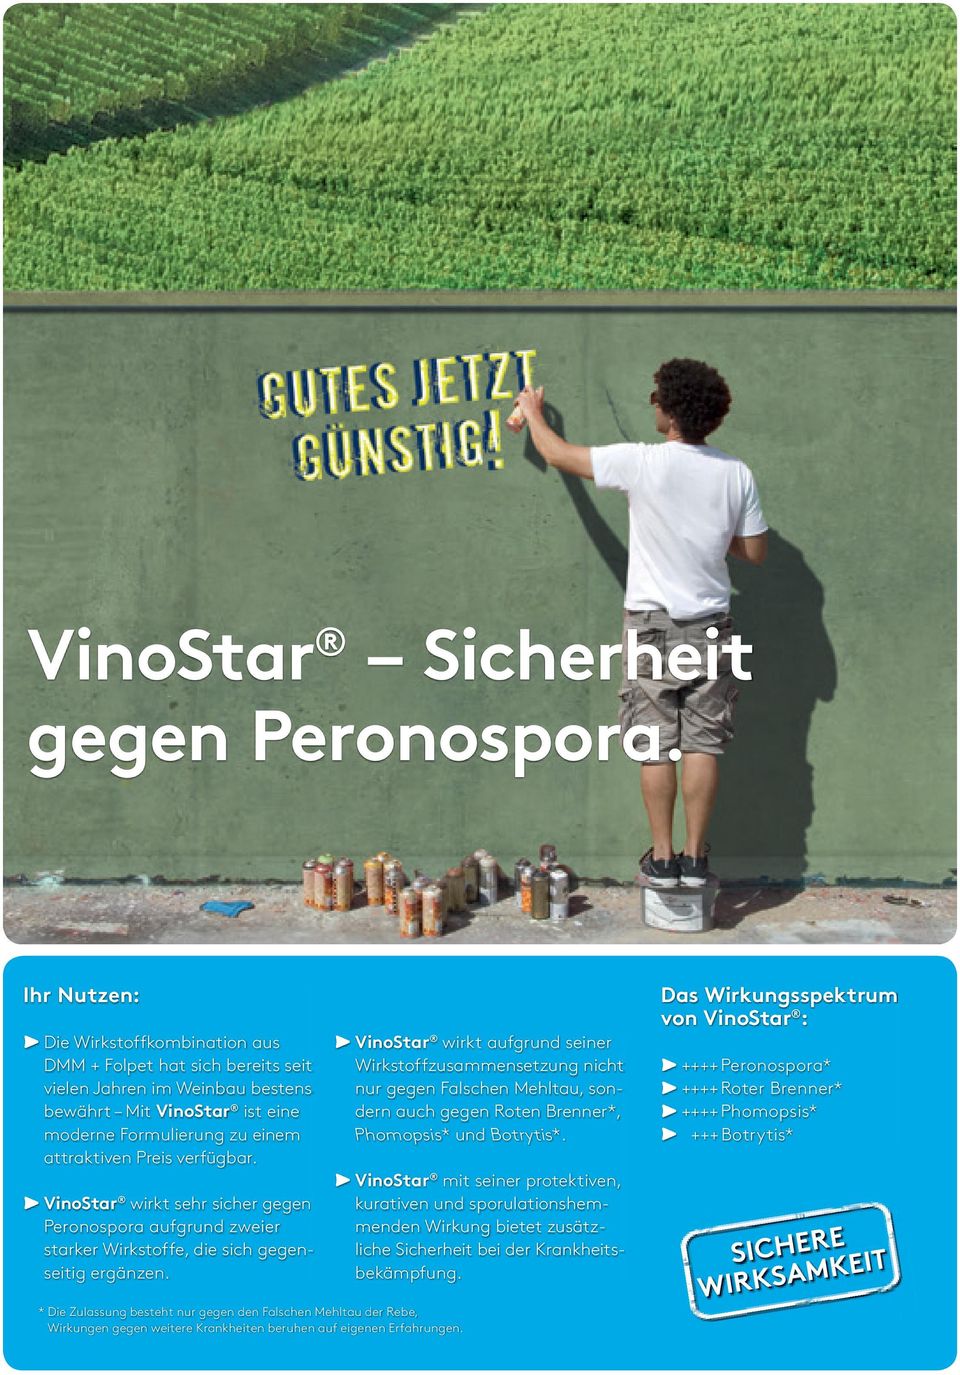 VinoStar wirkt sehr sicher gegen Peronospora aufgrund zweier starker Wirkstoffe, die sich gegenseitig ergänzen.